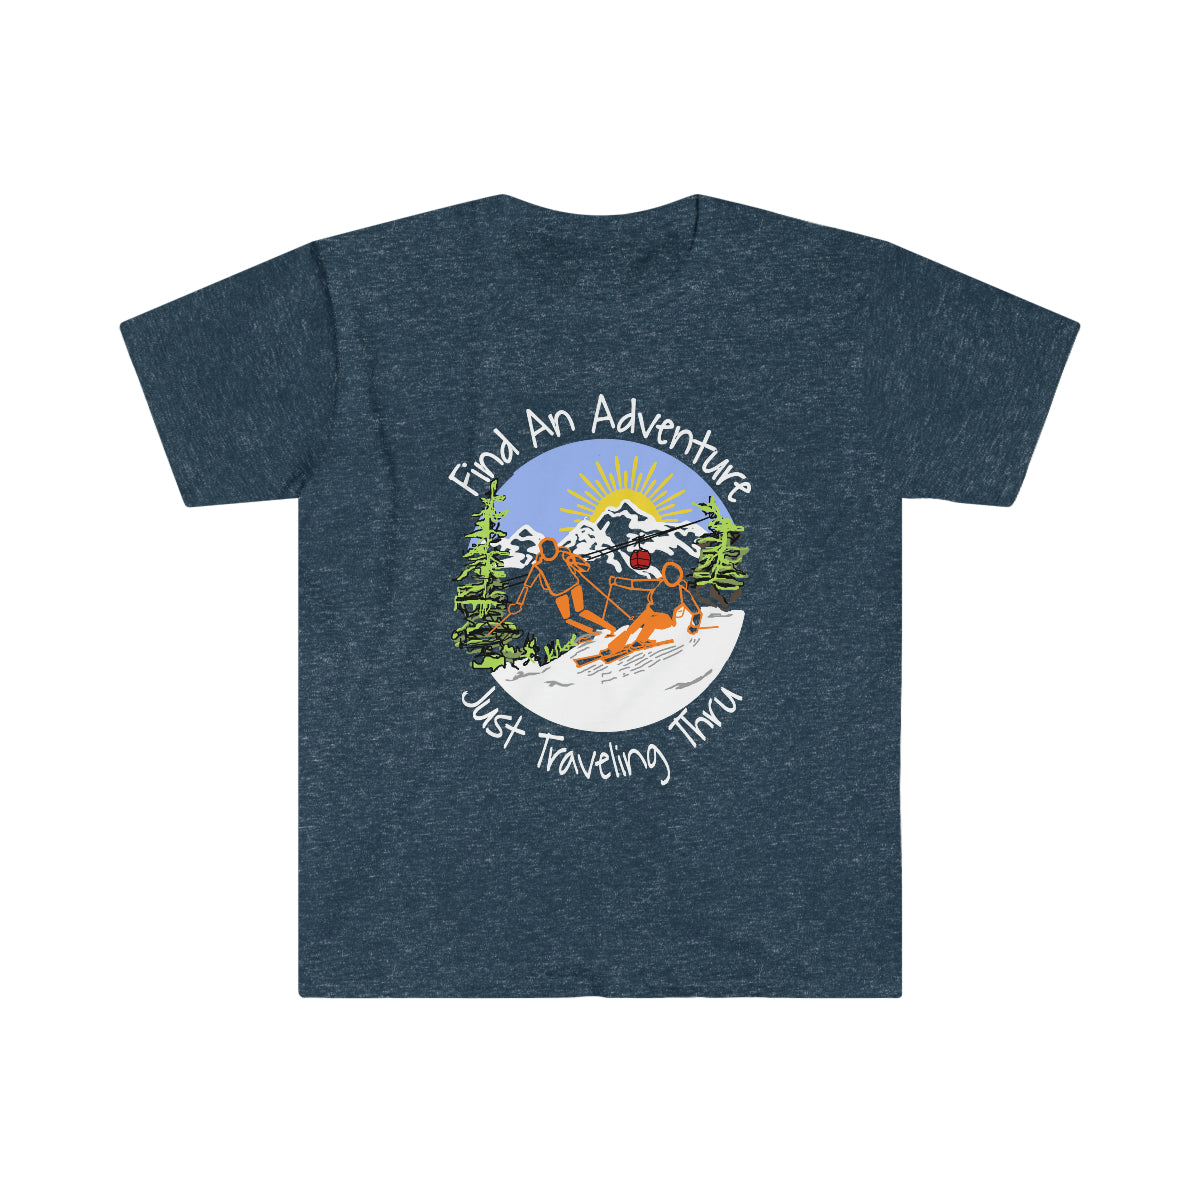 Find an Adventure t-shirt